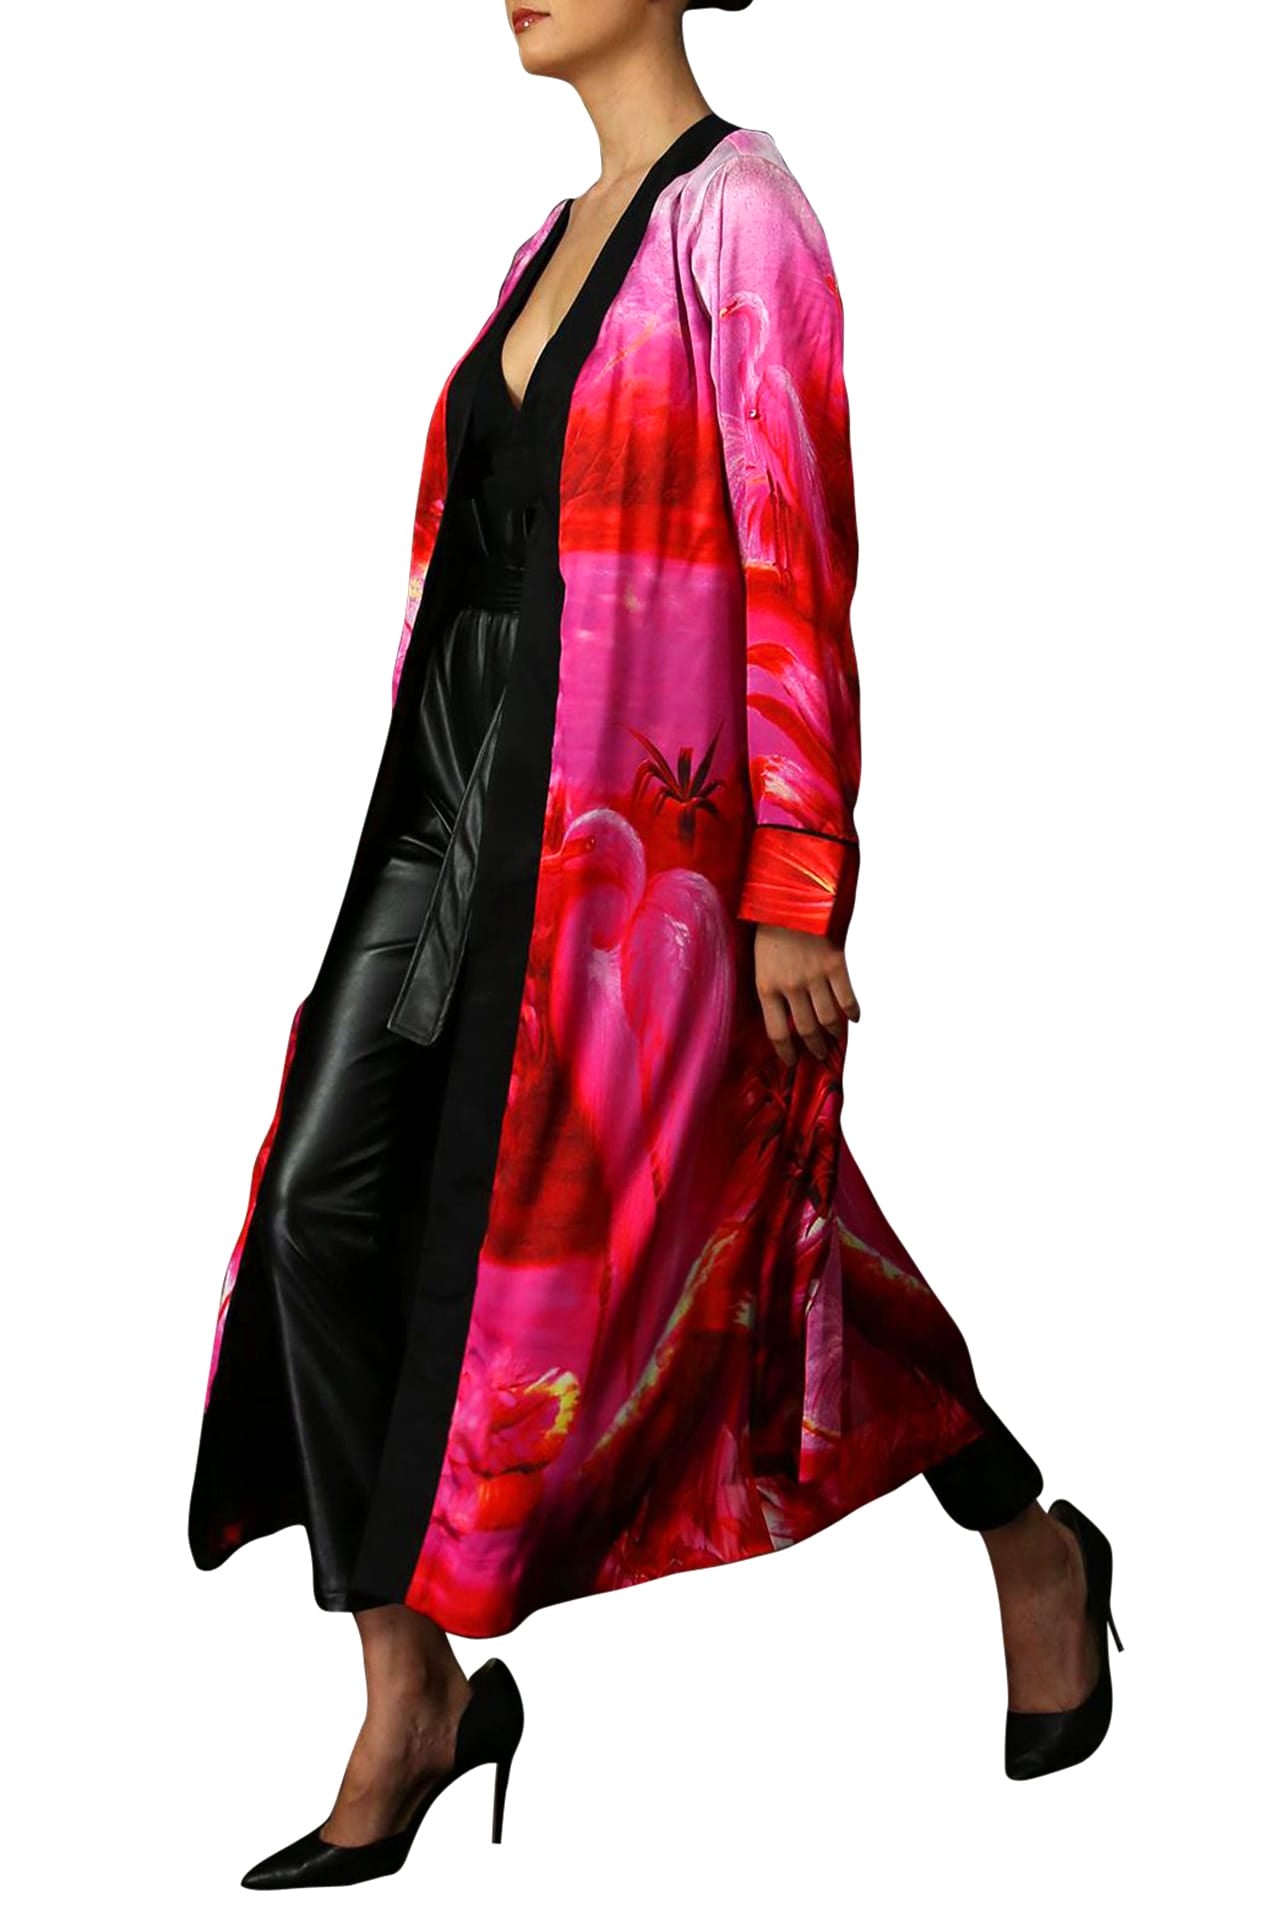 "Kyle X Shahida" "robe silk kimono" "sexy silk robe" "beautiful kimono" "pink silk robe"